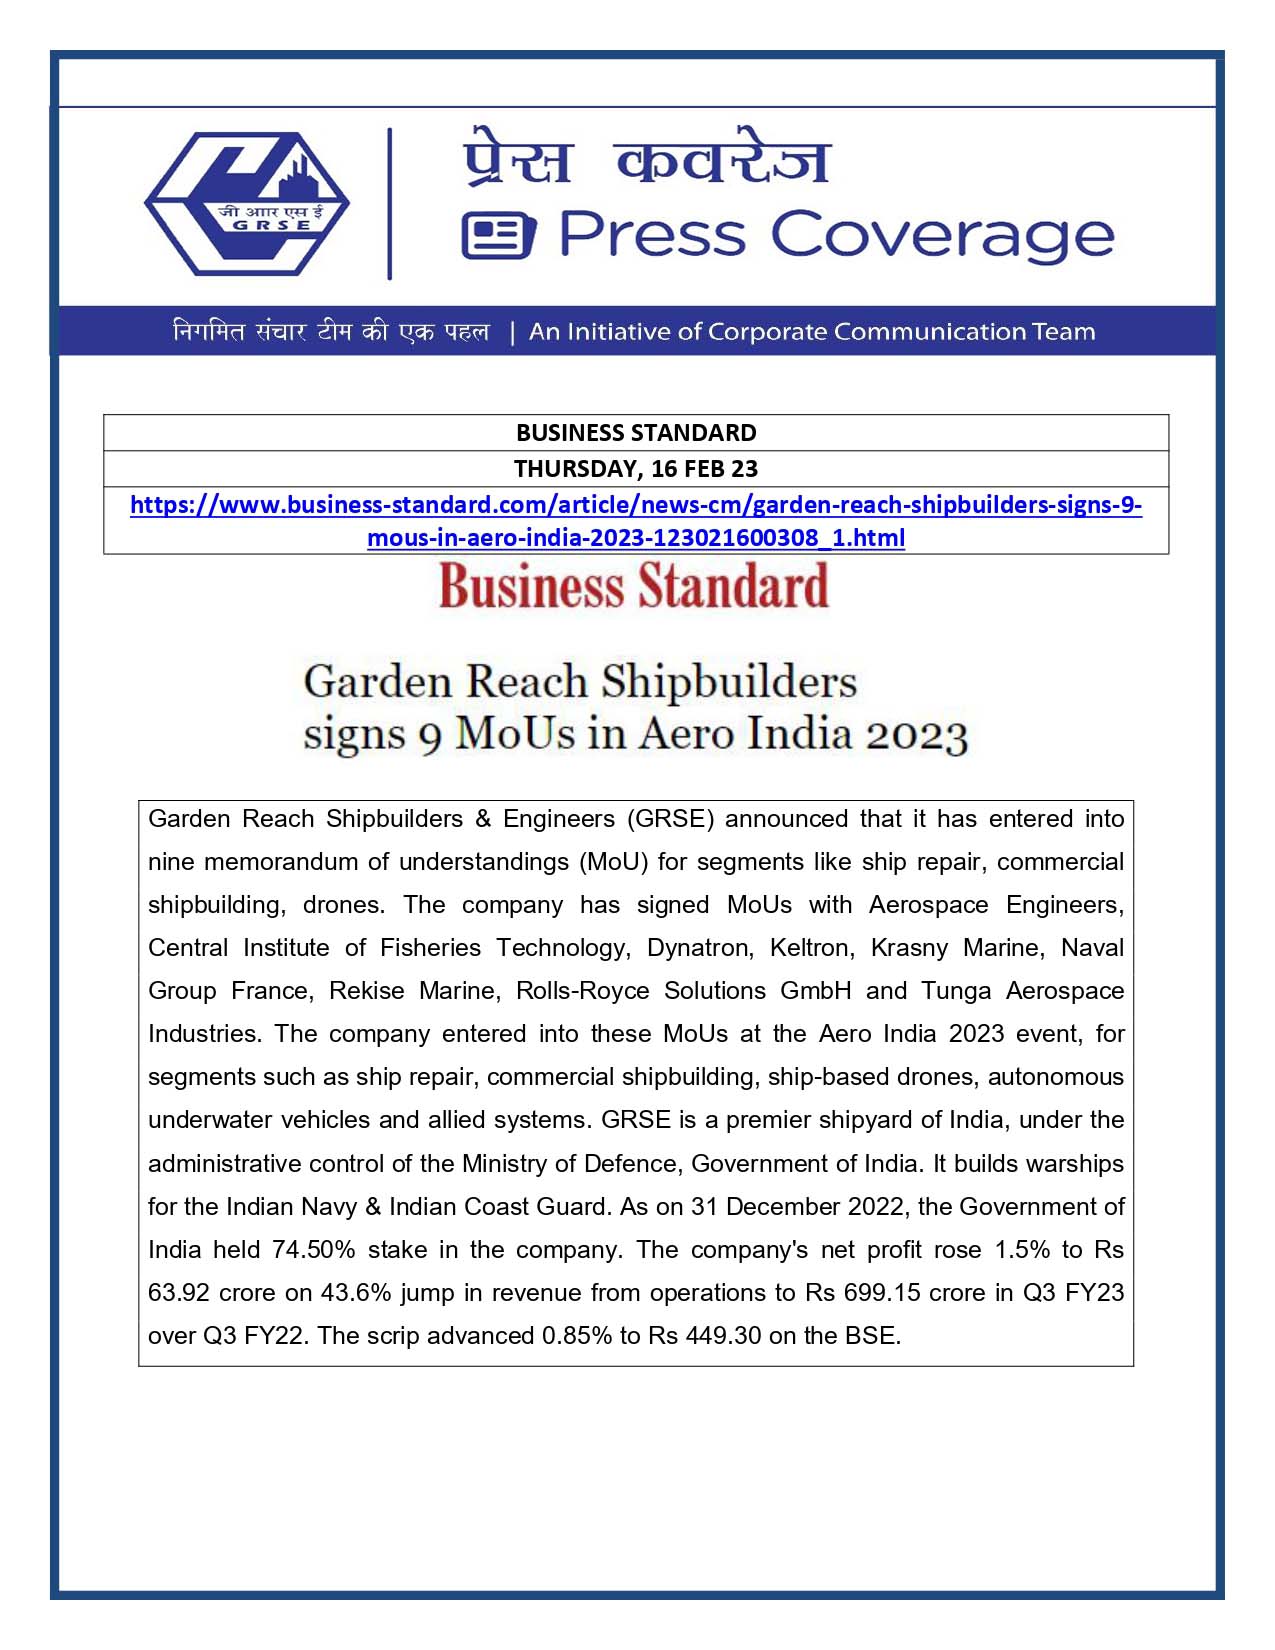 Business Standard 16 Feb 23